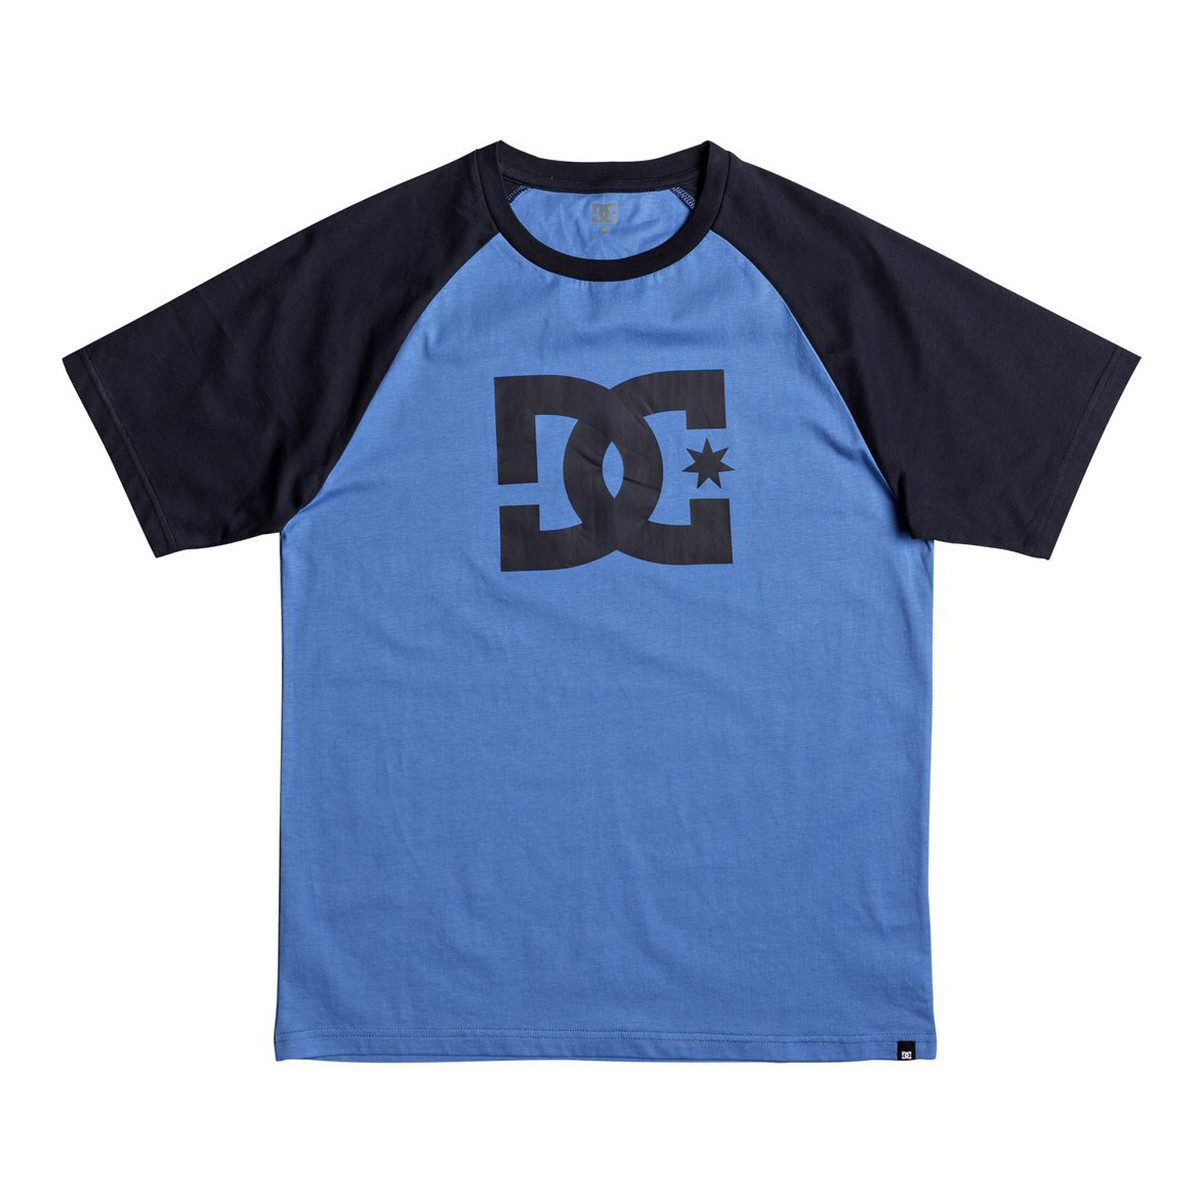 DC T-Shirt Star Raglan Dark Indigo/Campunula